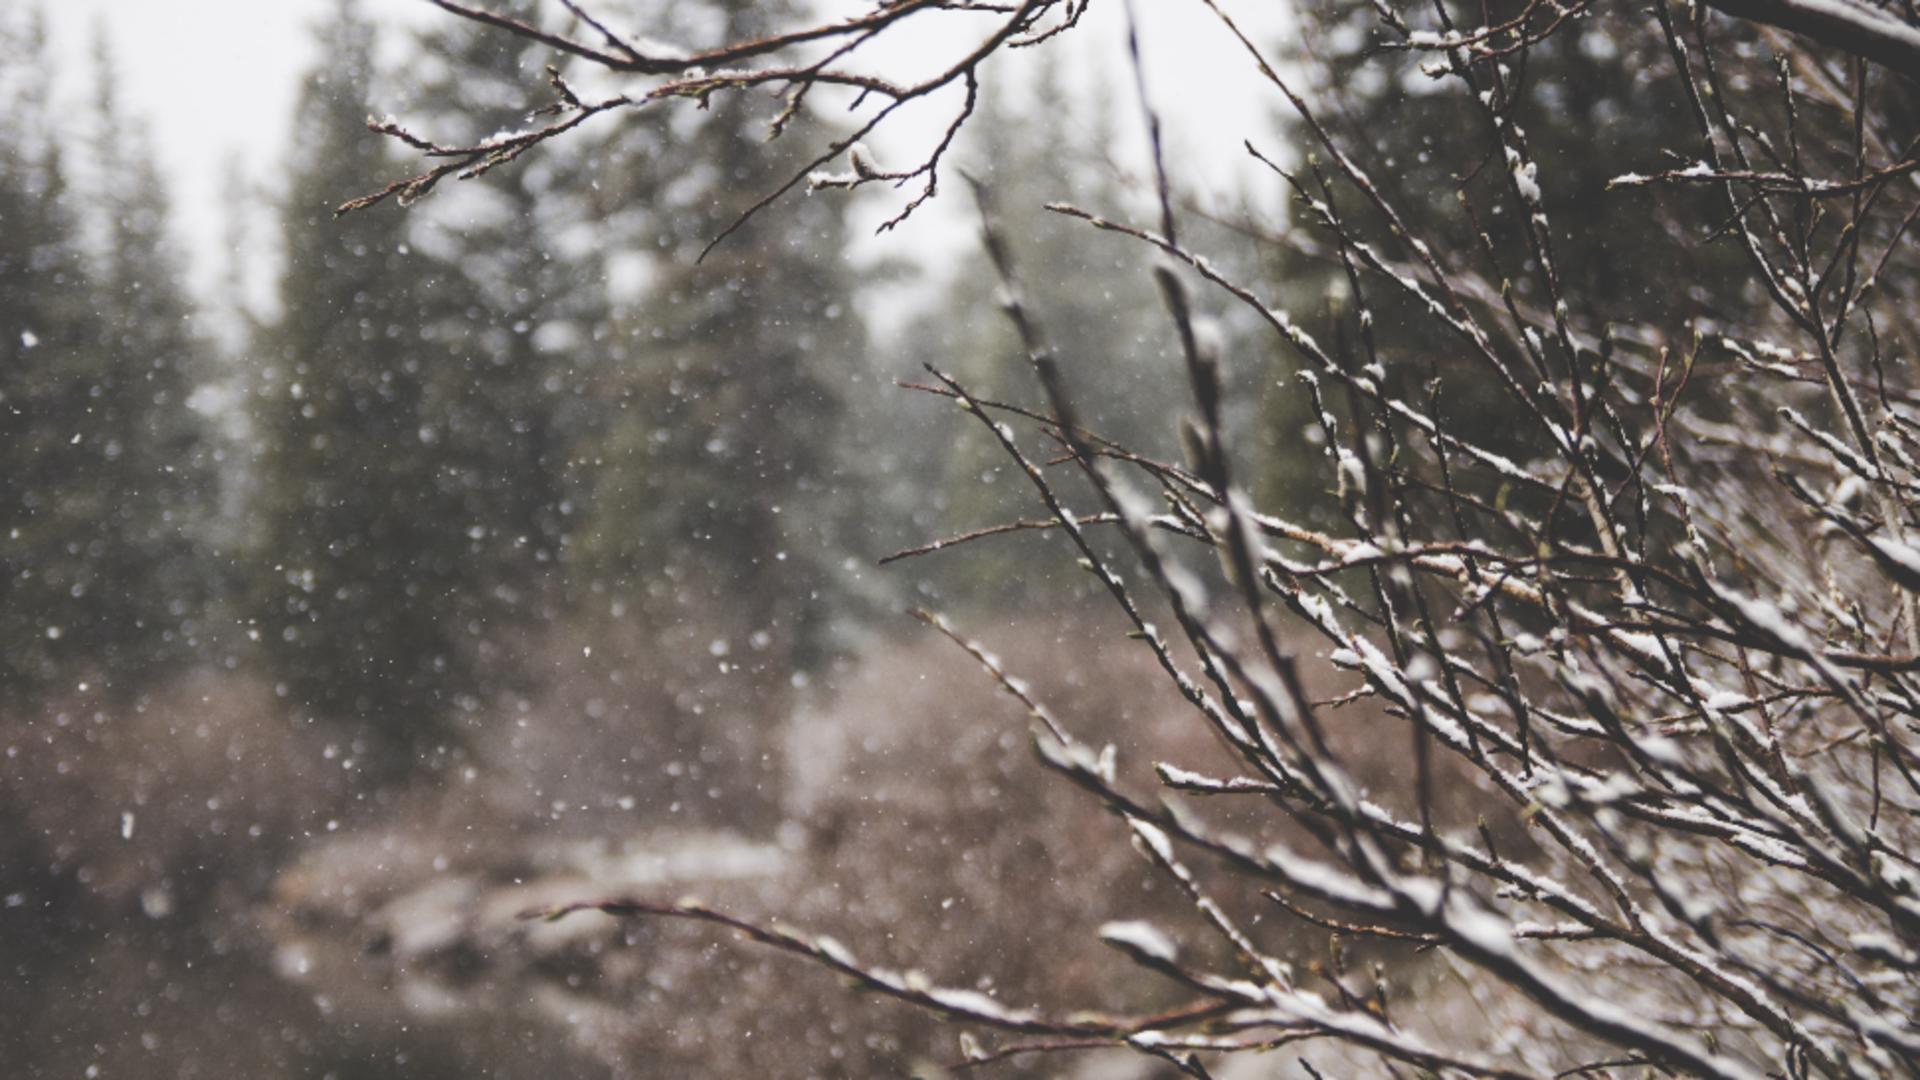 Sărbătorile cu zăpadă ca în povești rămân doar un vis frumos? ANM anunță temperaturi peste cele obişnuite de Crăciun şi Anul Nou